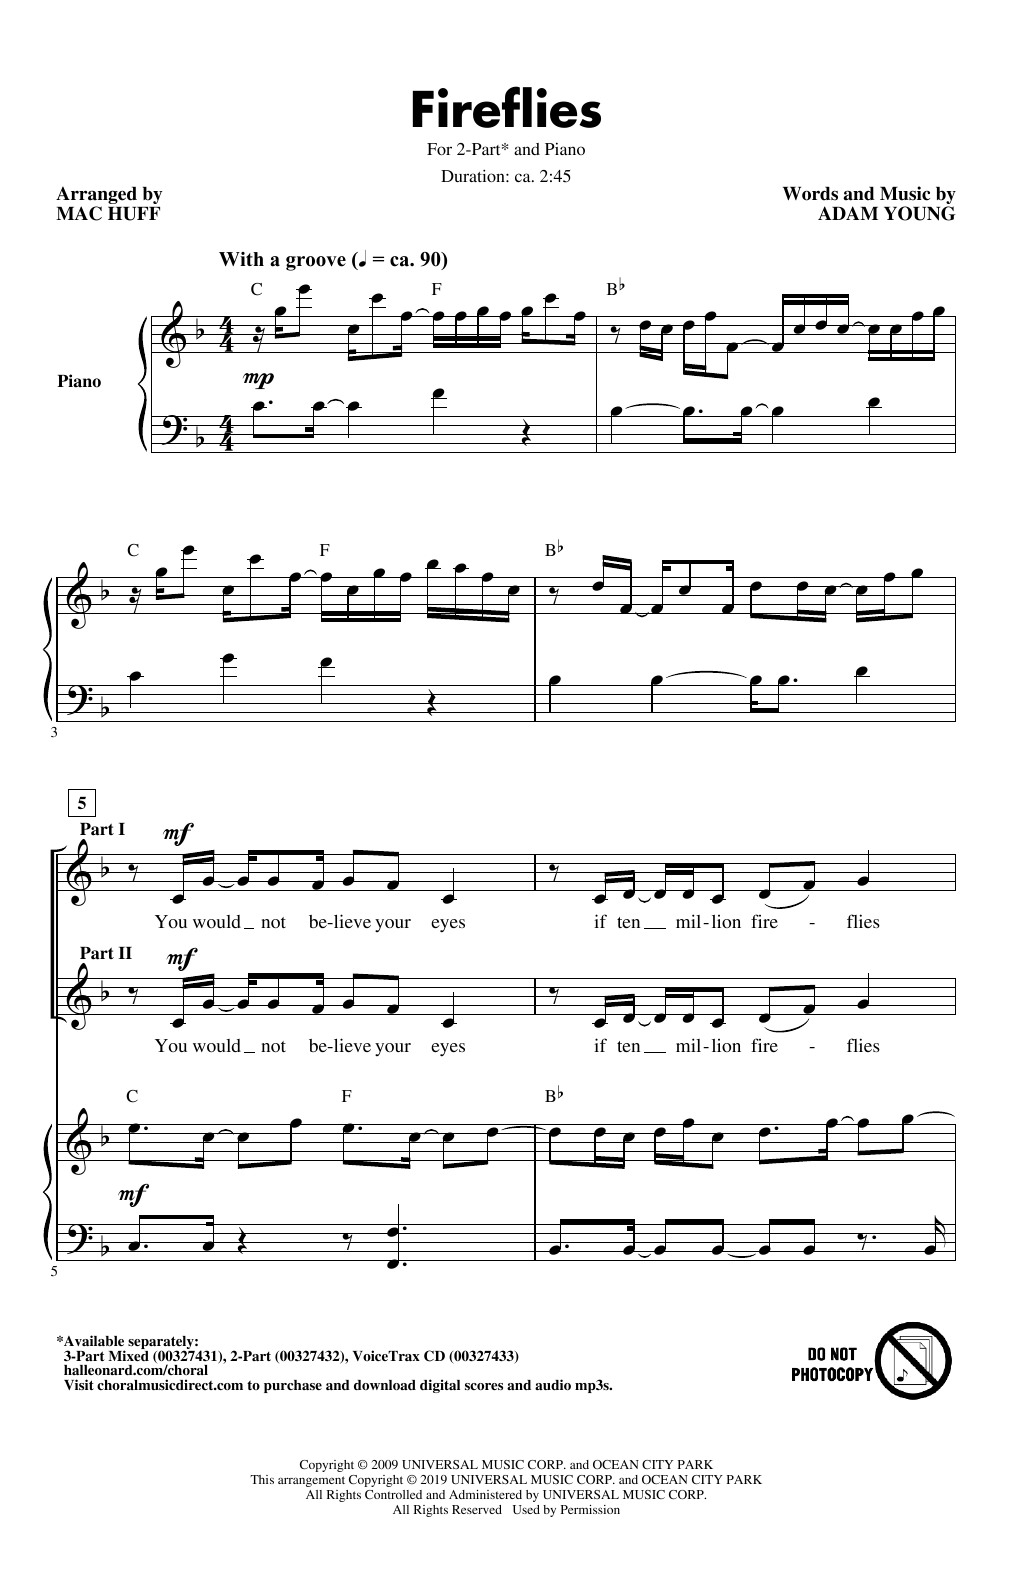 Owl City Fireflies (arr. Mac Huff) sheet music notes and chords arranged for 2-Part Choir